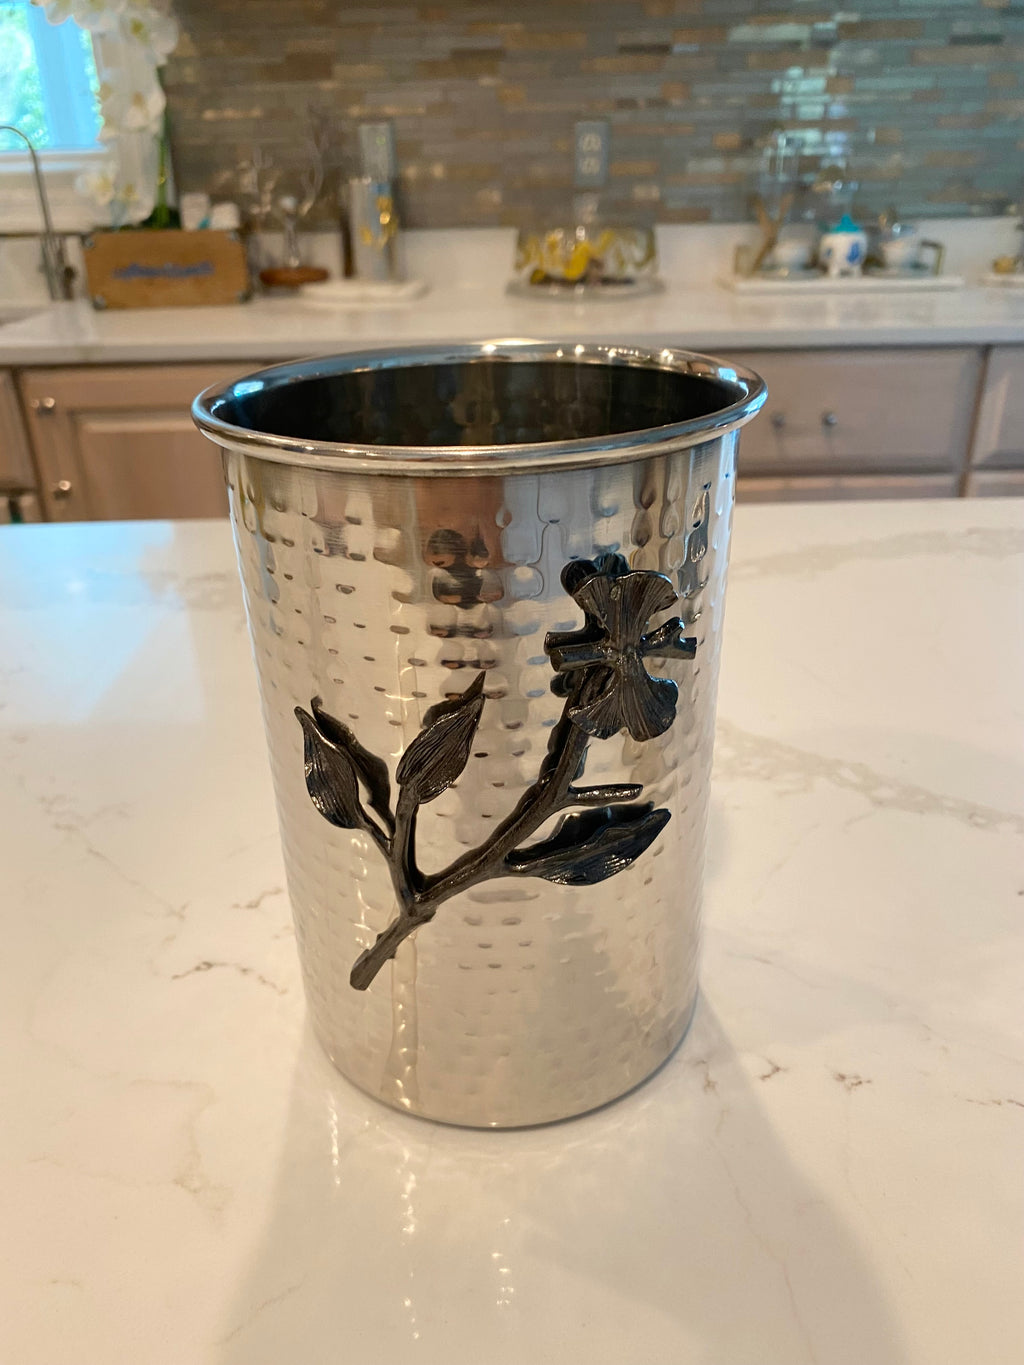 Stainless steel vase with Dark silver vine